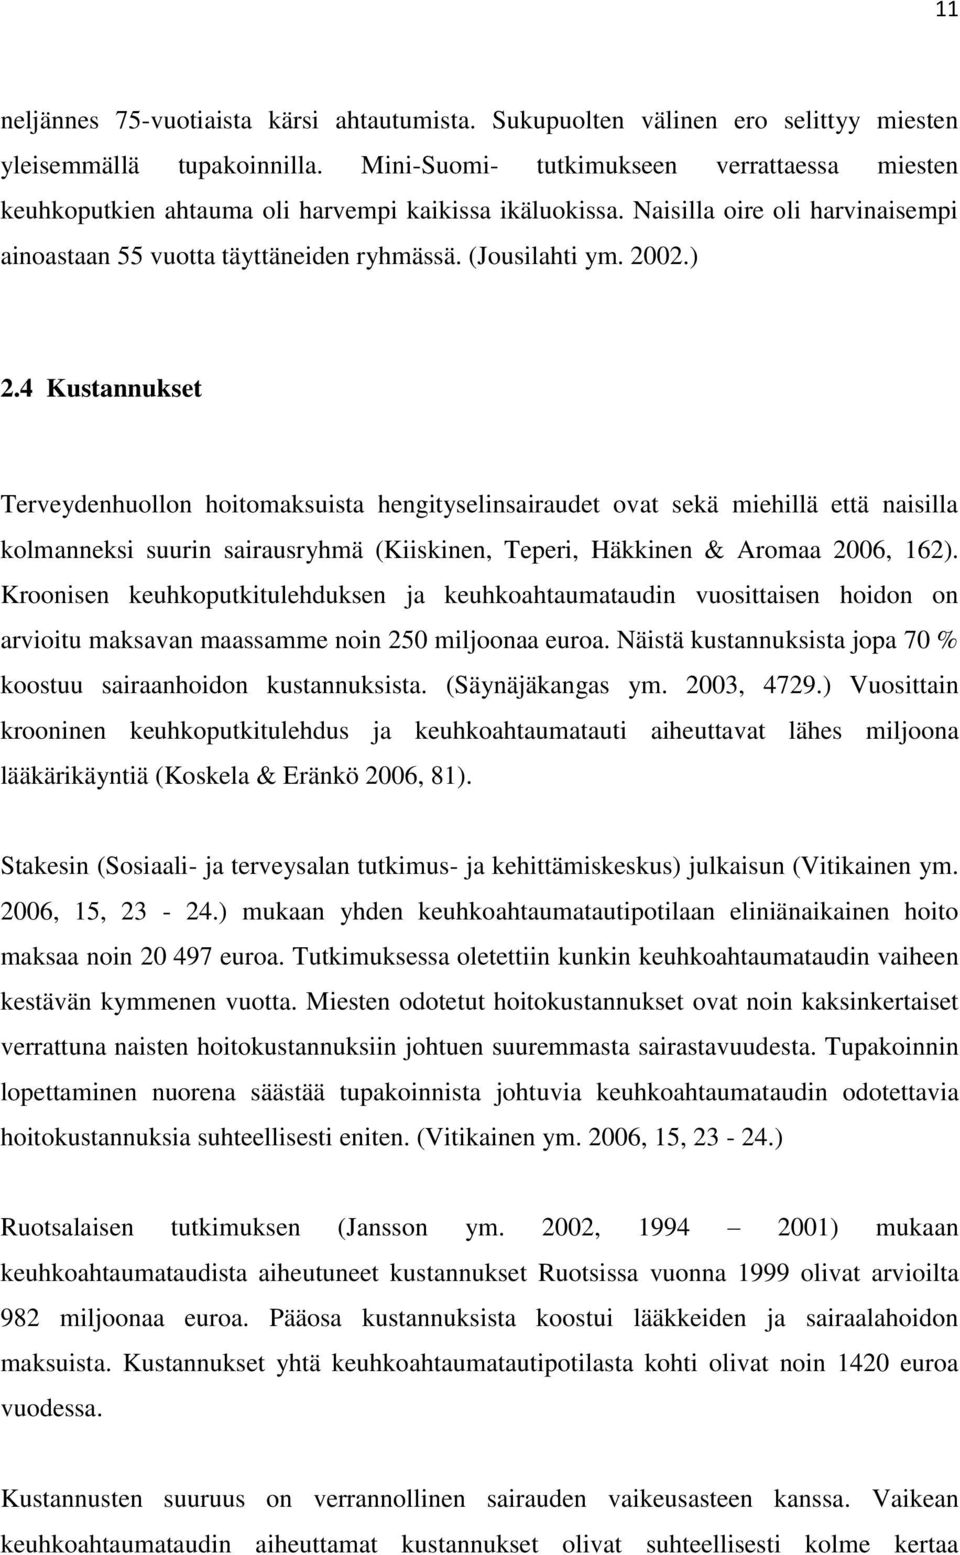 ) 2.4 Kustannukset Terveydenhuollon hoitomaksuista hengityselinsairaudet ovat sekä miehillä että naisilla kolmanneksi suurin sairausryhmä (Kiiskinen, Teperi, Häkkinen & Aromaa 2006, 162).